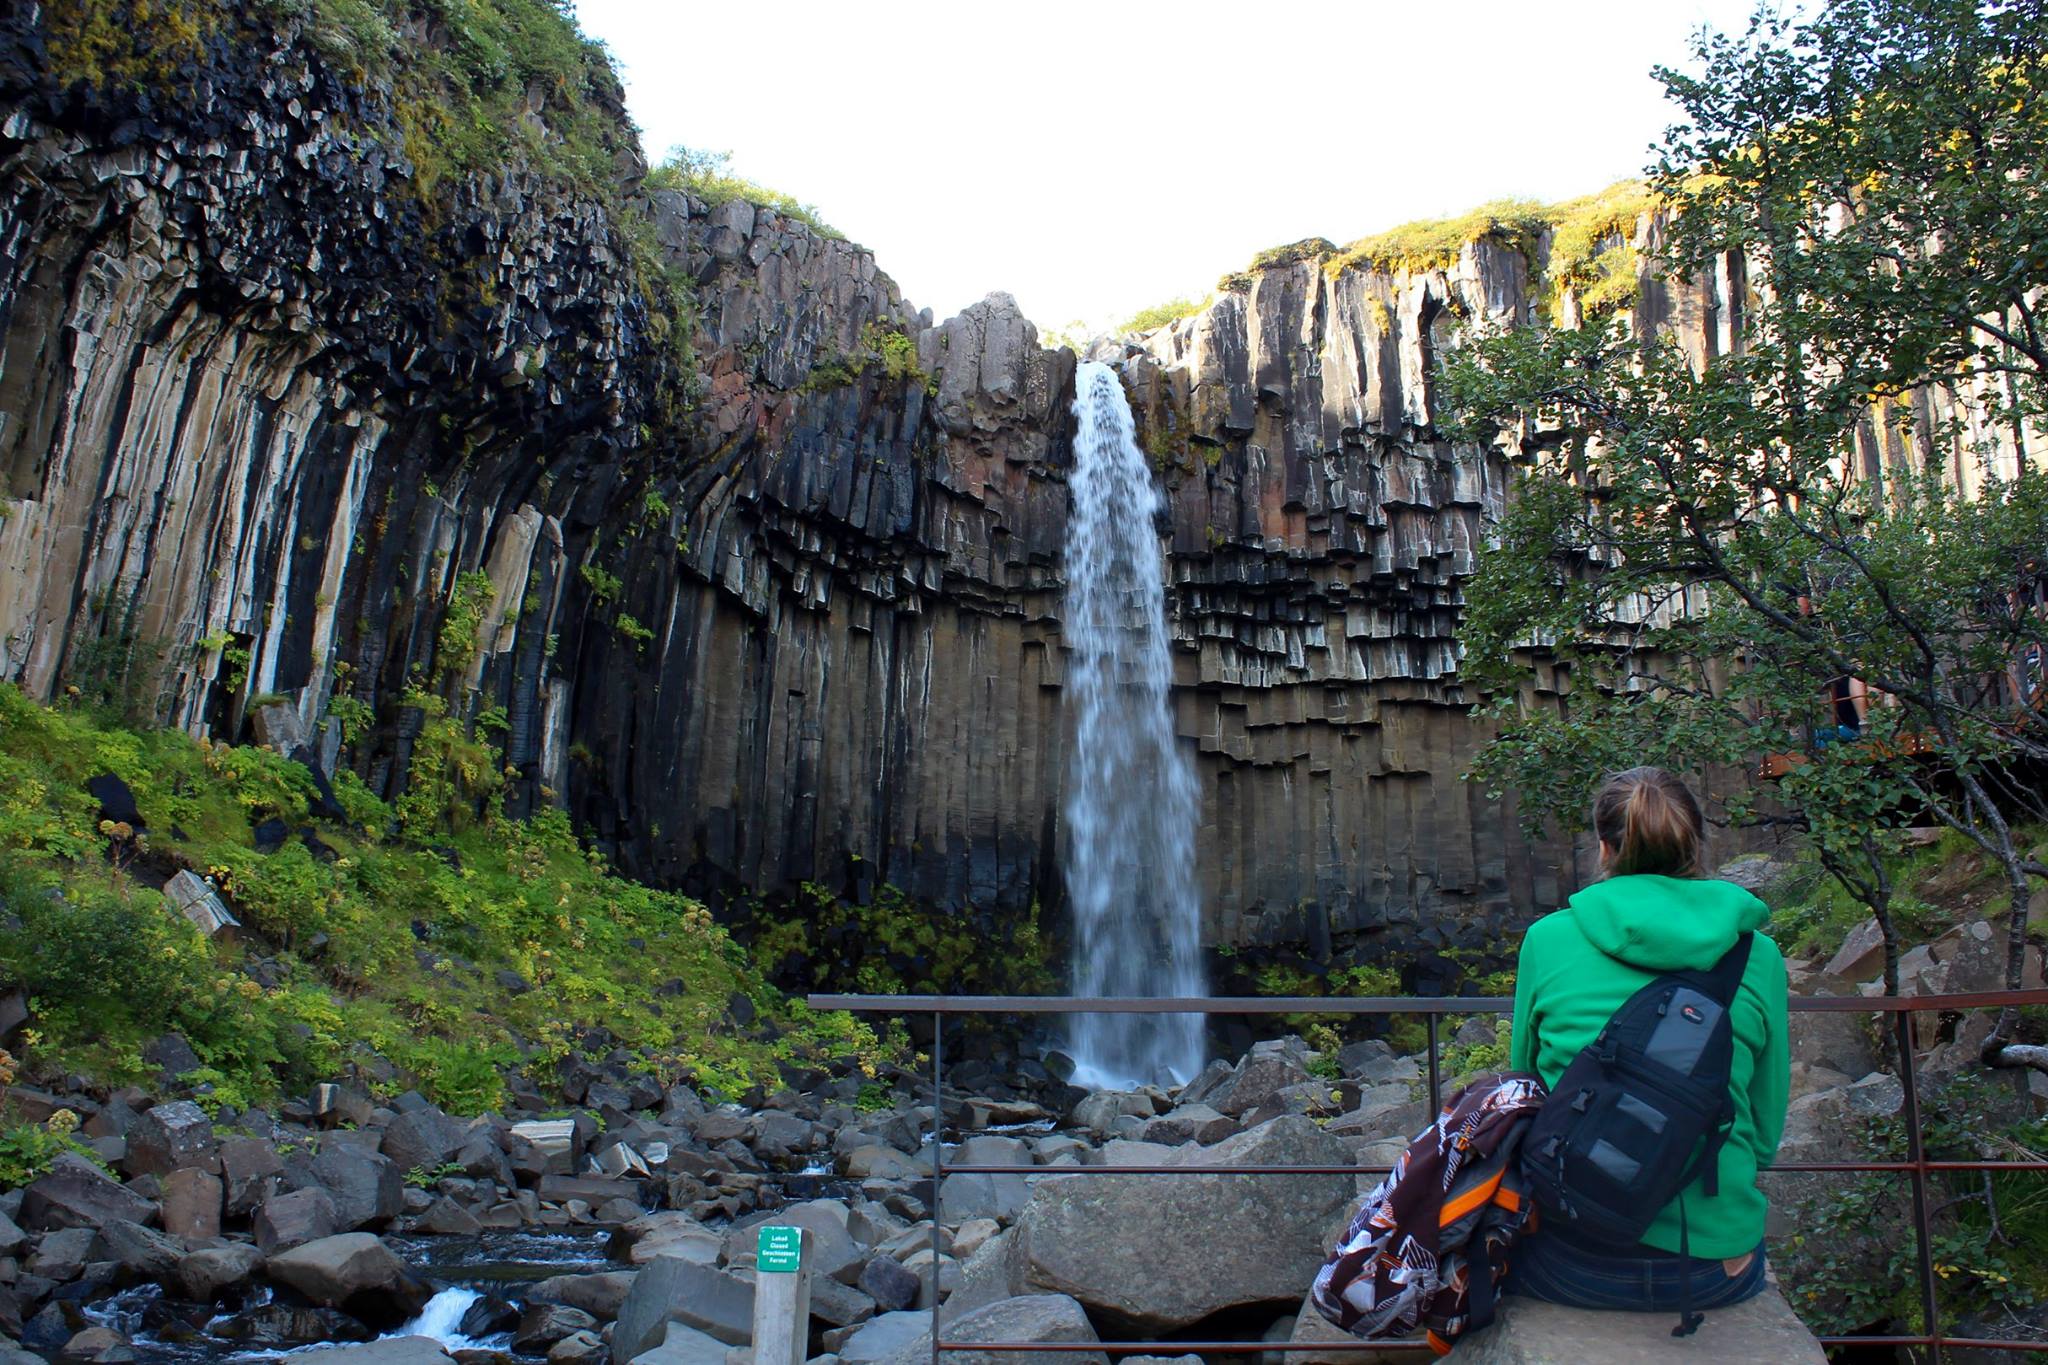 Kathi sitting in front of Svartifoss waterfall